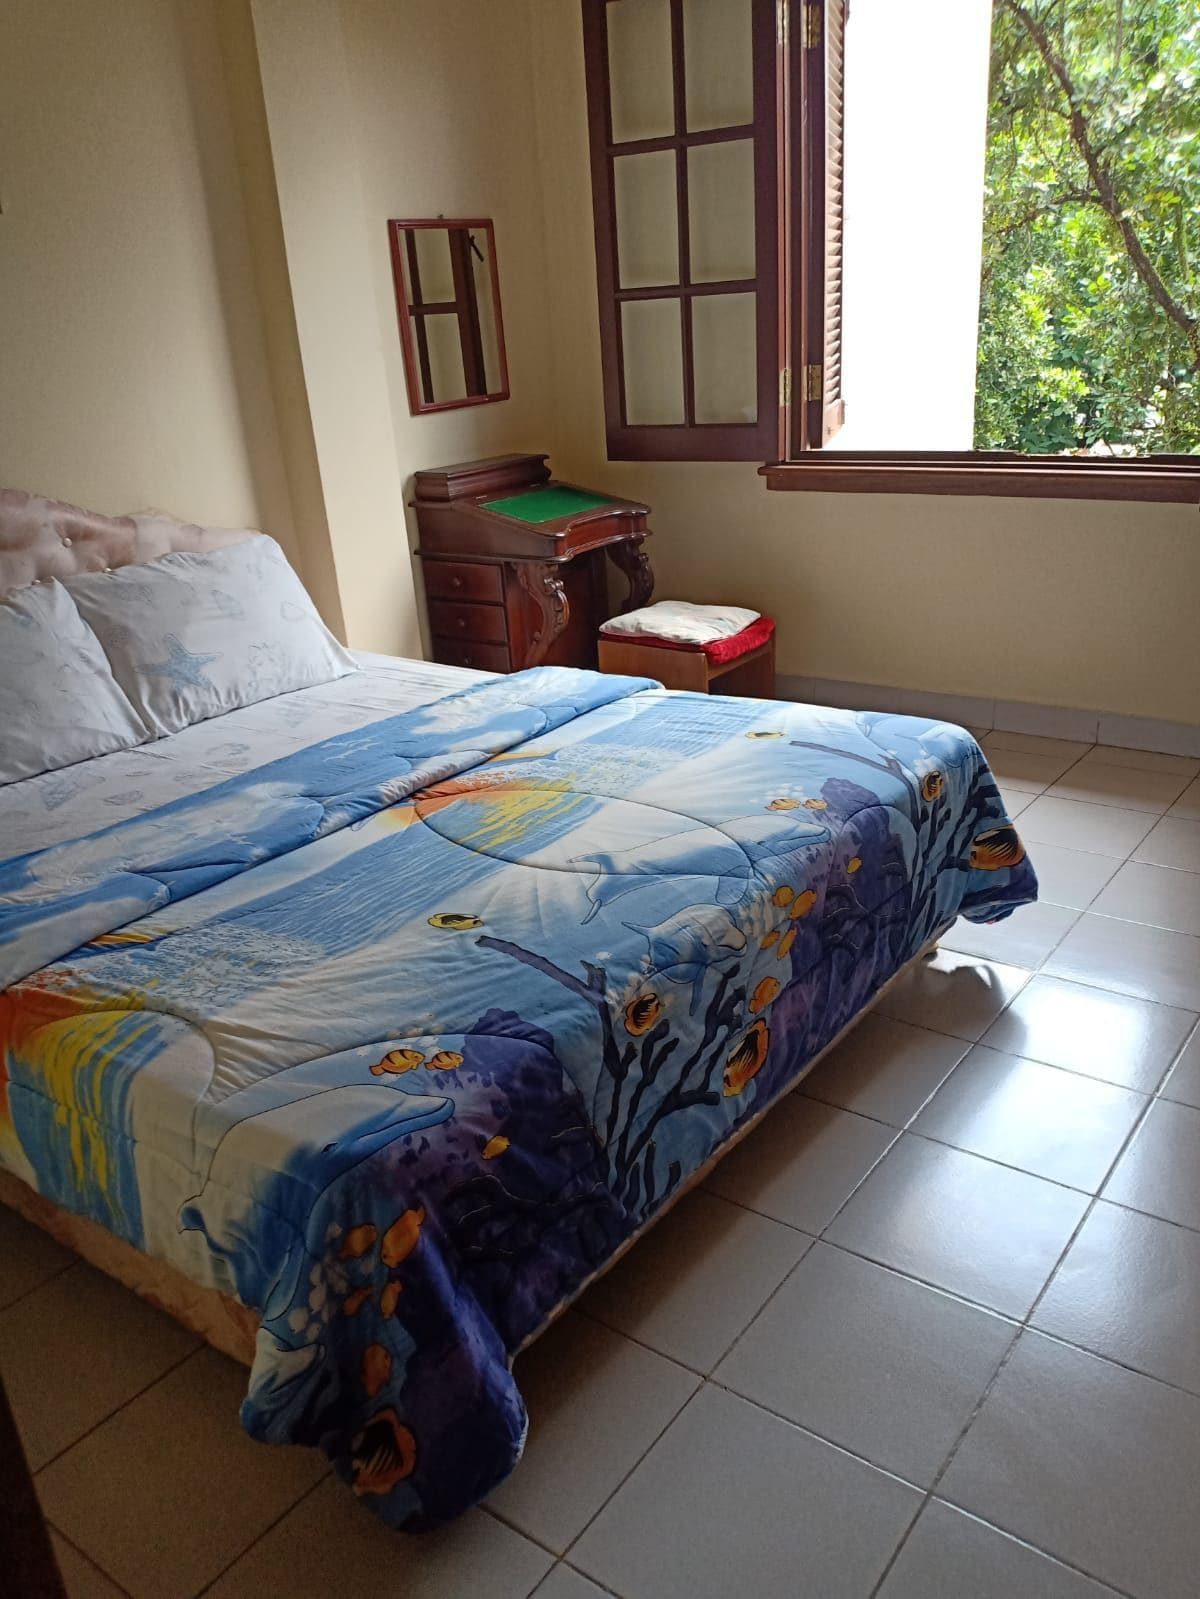 Carita 2 bed Room's view krakatau